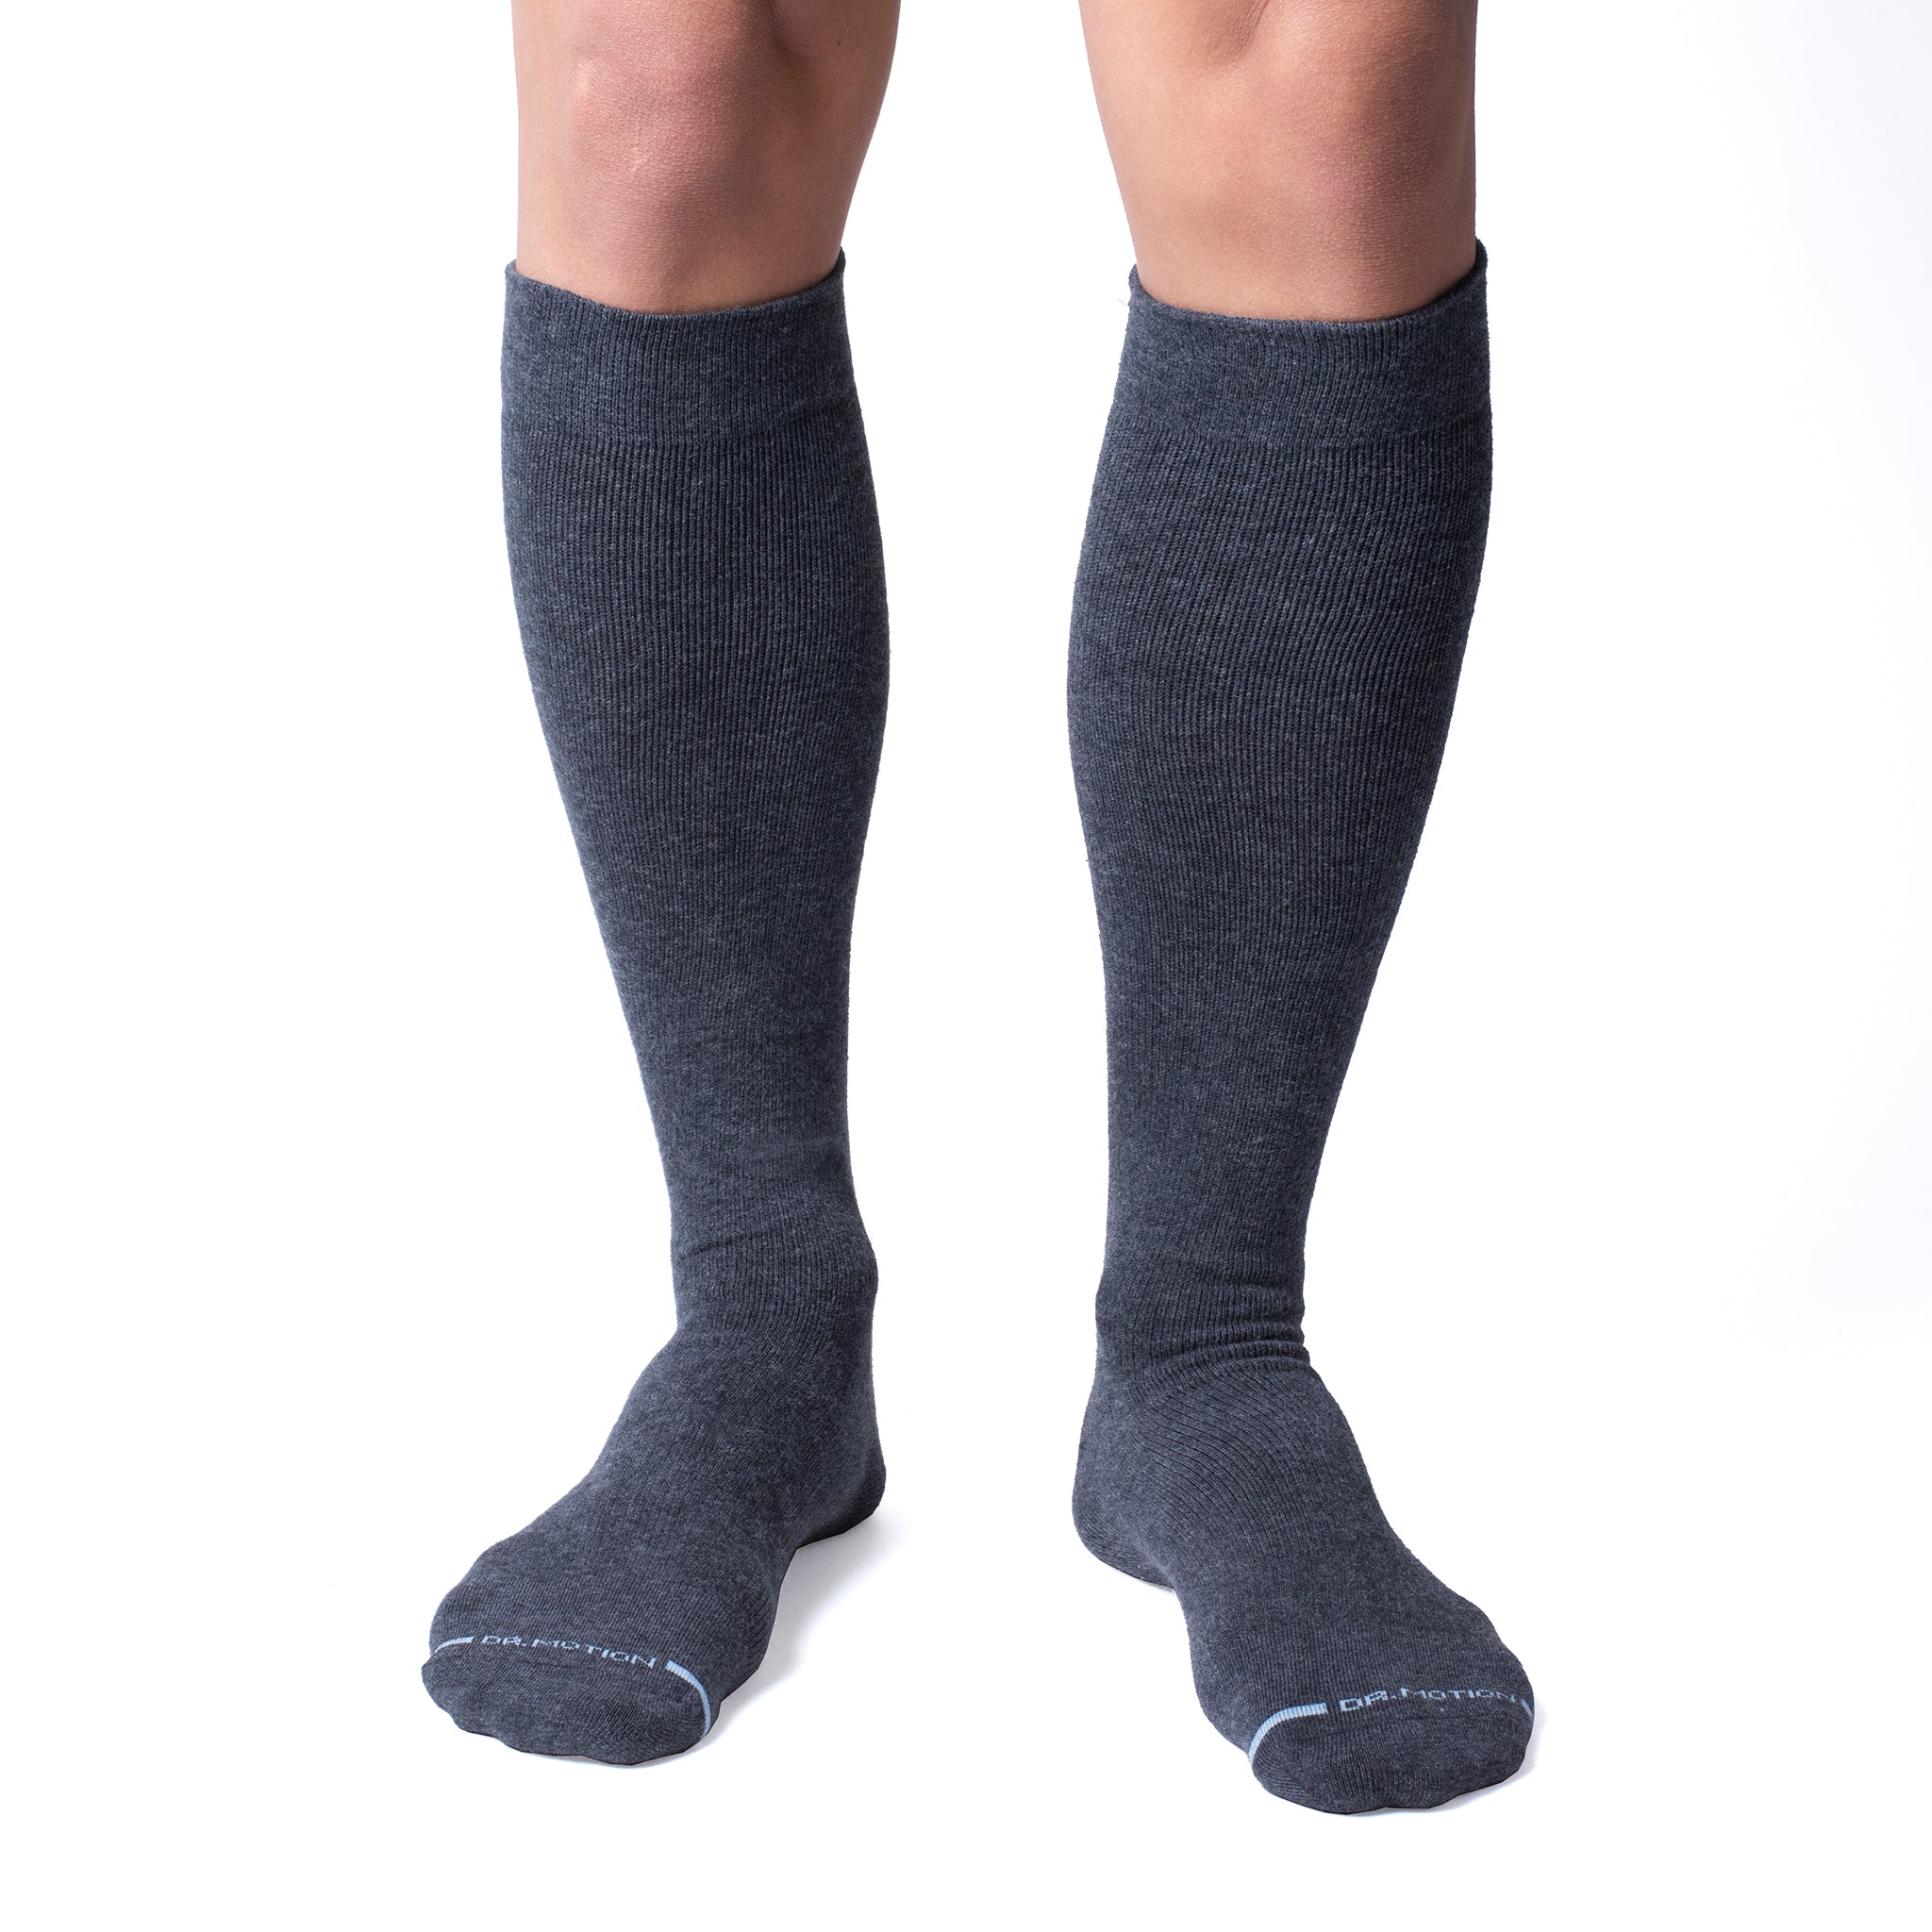 Knee-High Compression Socks For Men, Dr. Motion